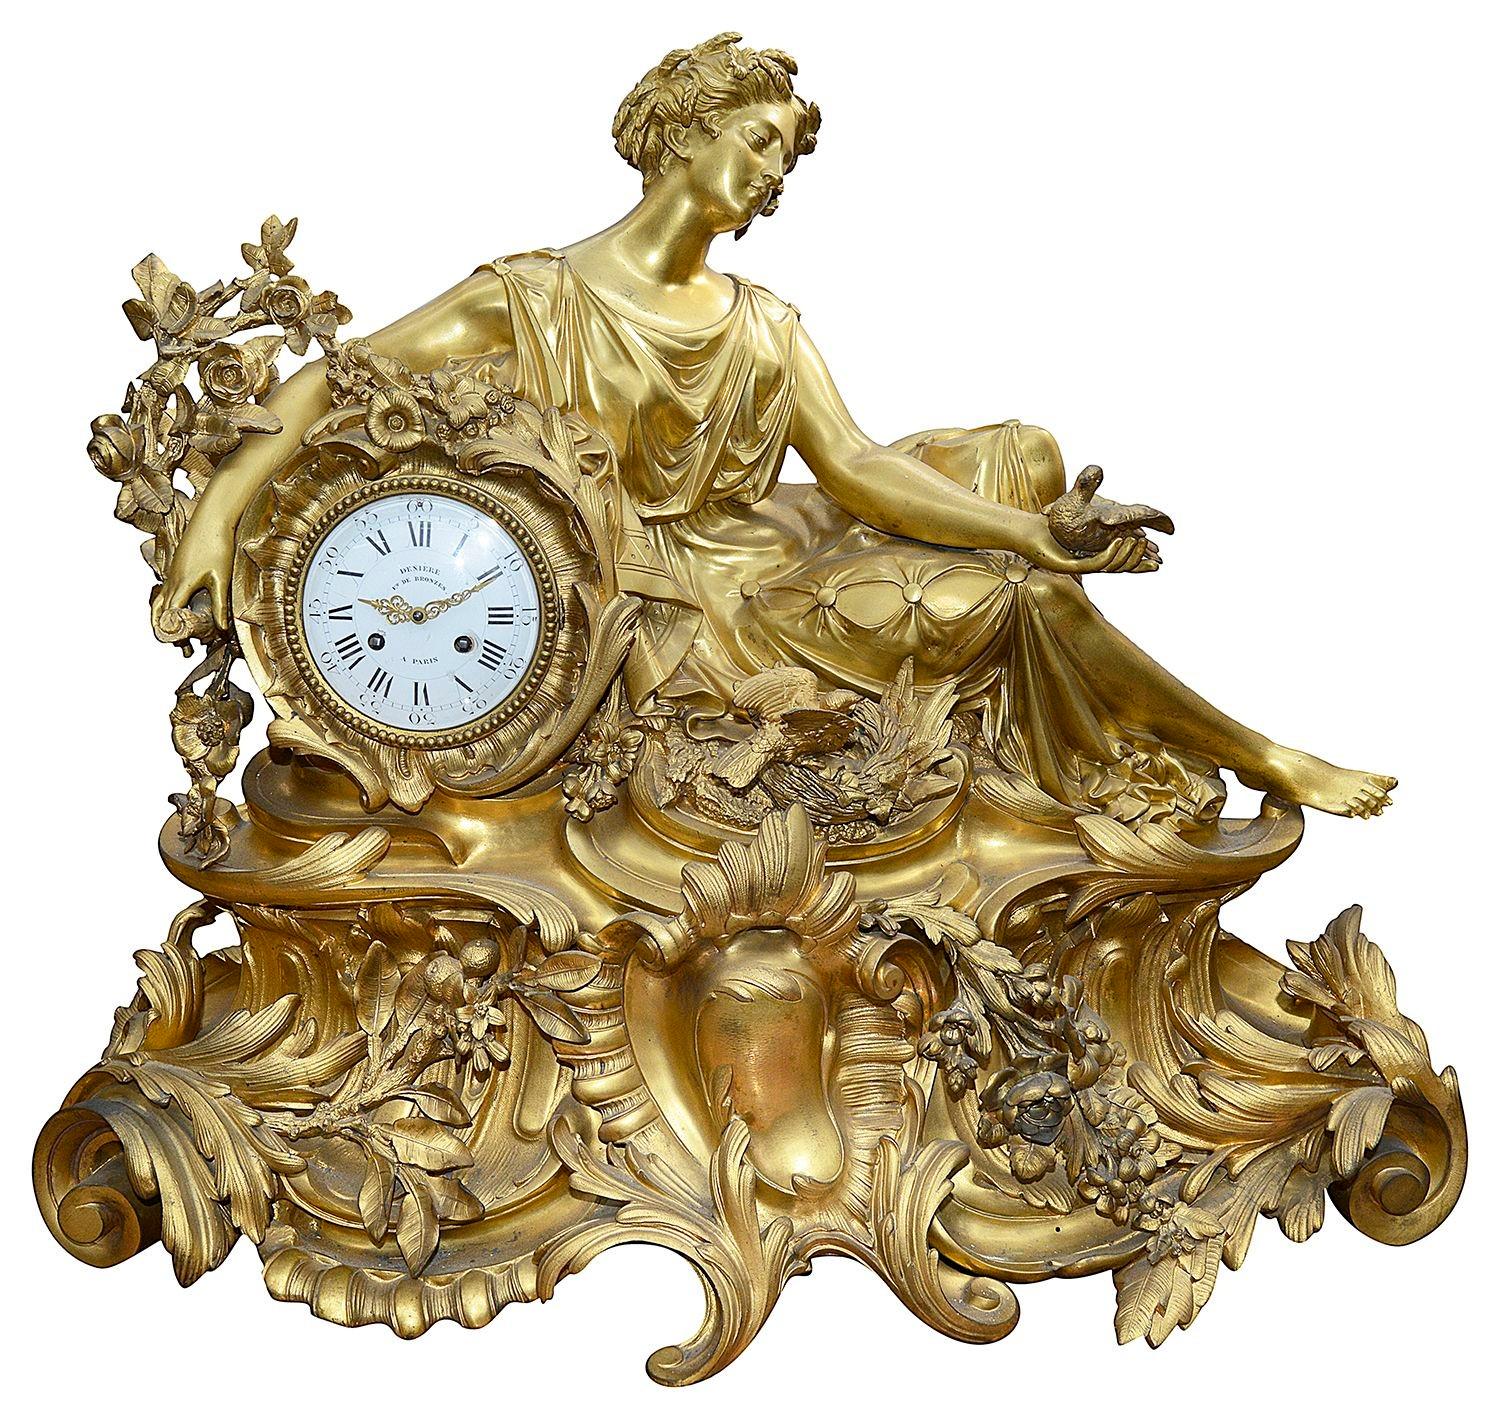 Eine wunderbar beeindruckende französische vergoldete Ormolu-Uhrengarnitur aus dem 19. Jahrhundert, von Deniere aus Paris. Die Uhr zeigt ein klassisches, liegendes Mädchen, das Tauben inmitten von Blumen und Blättern hält. Das weiß emaillierte